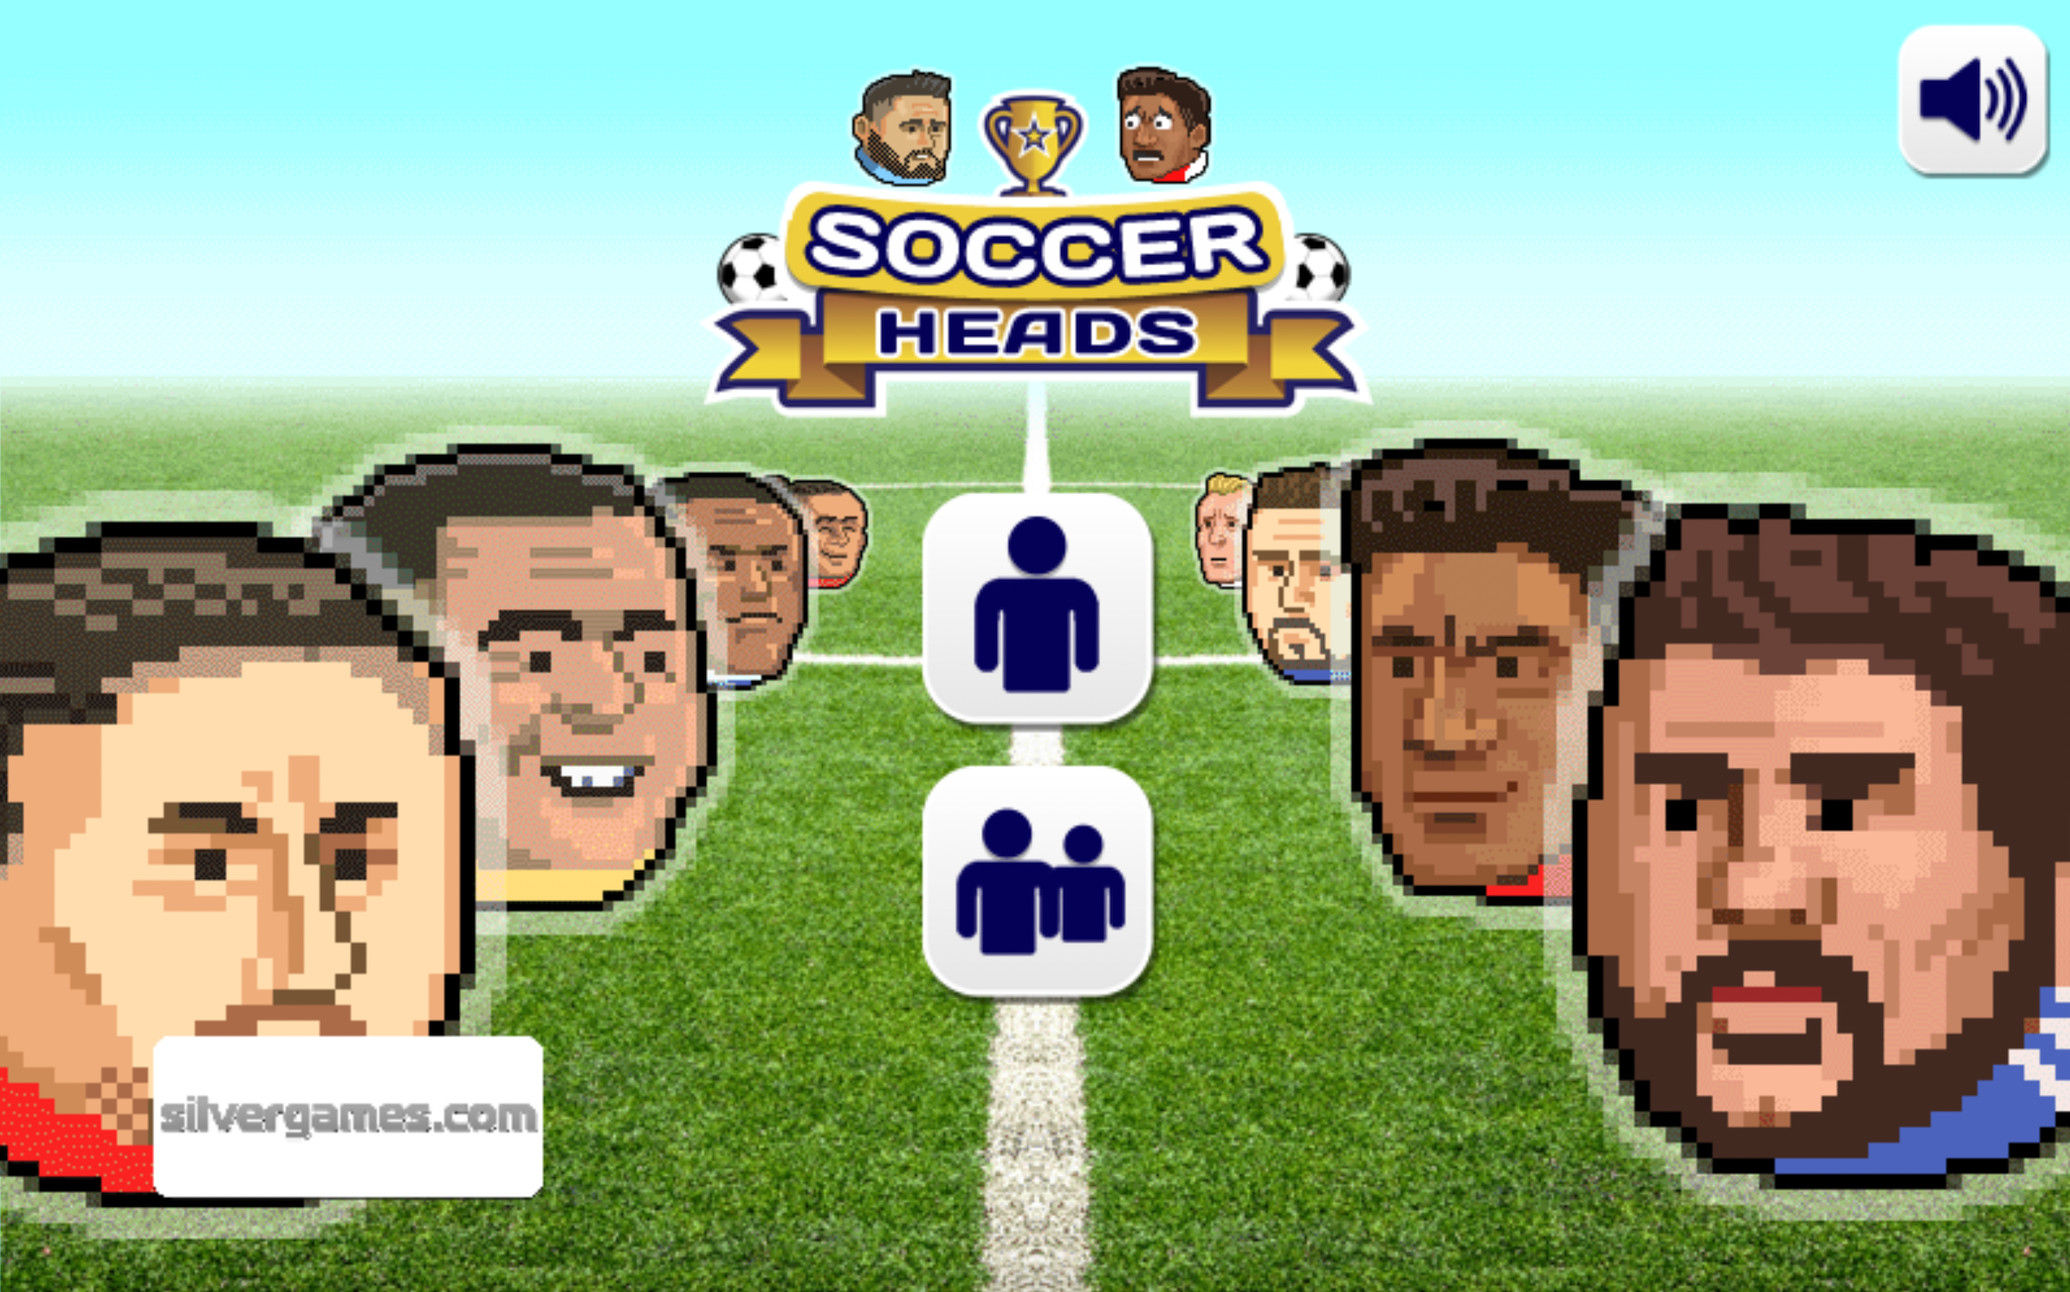 Head Soccer 2 Player: Play Head Soccer 2 Player for free